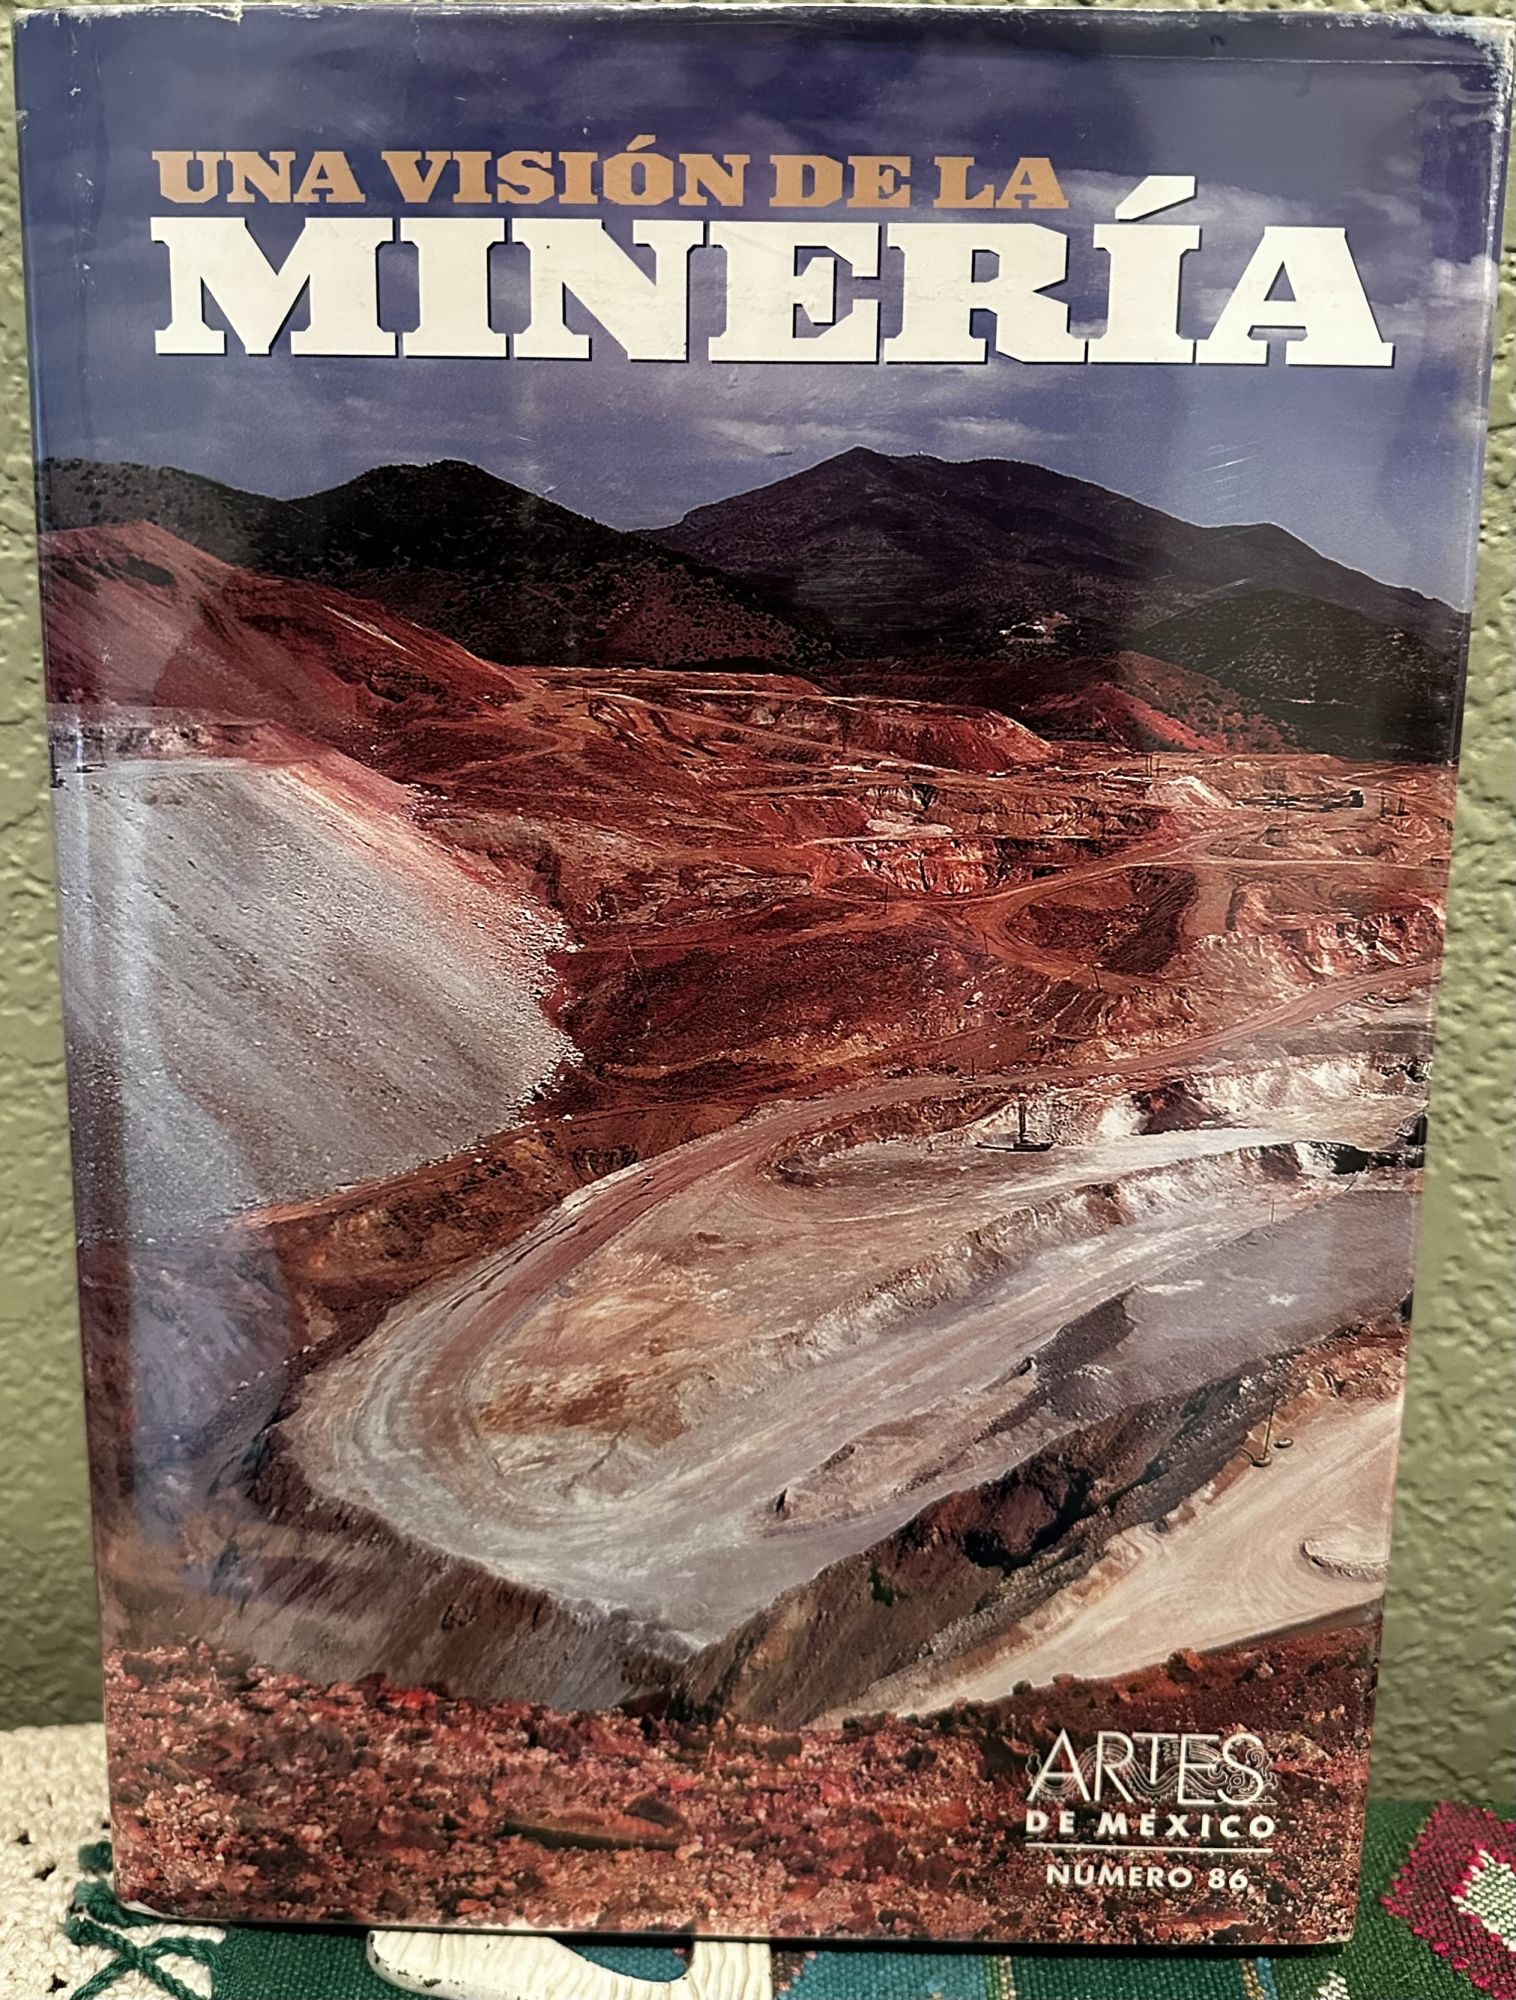 Artes De Mexico # 86. Una Vision De La Mineria / a Vision of Mining. Artes de Mexico.